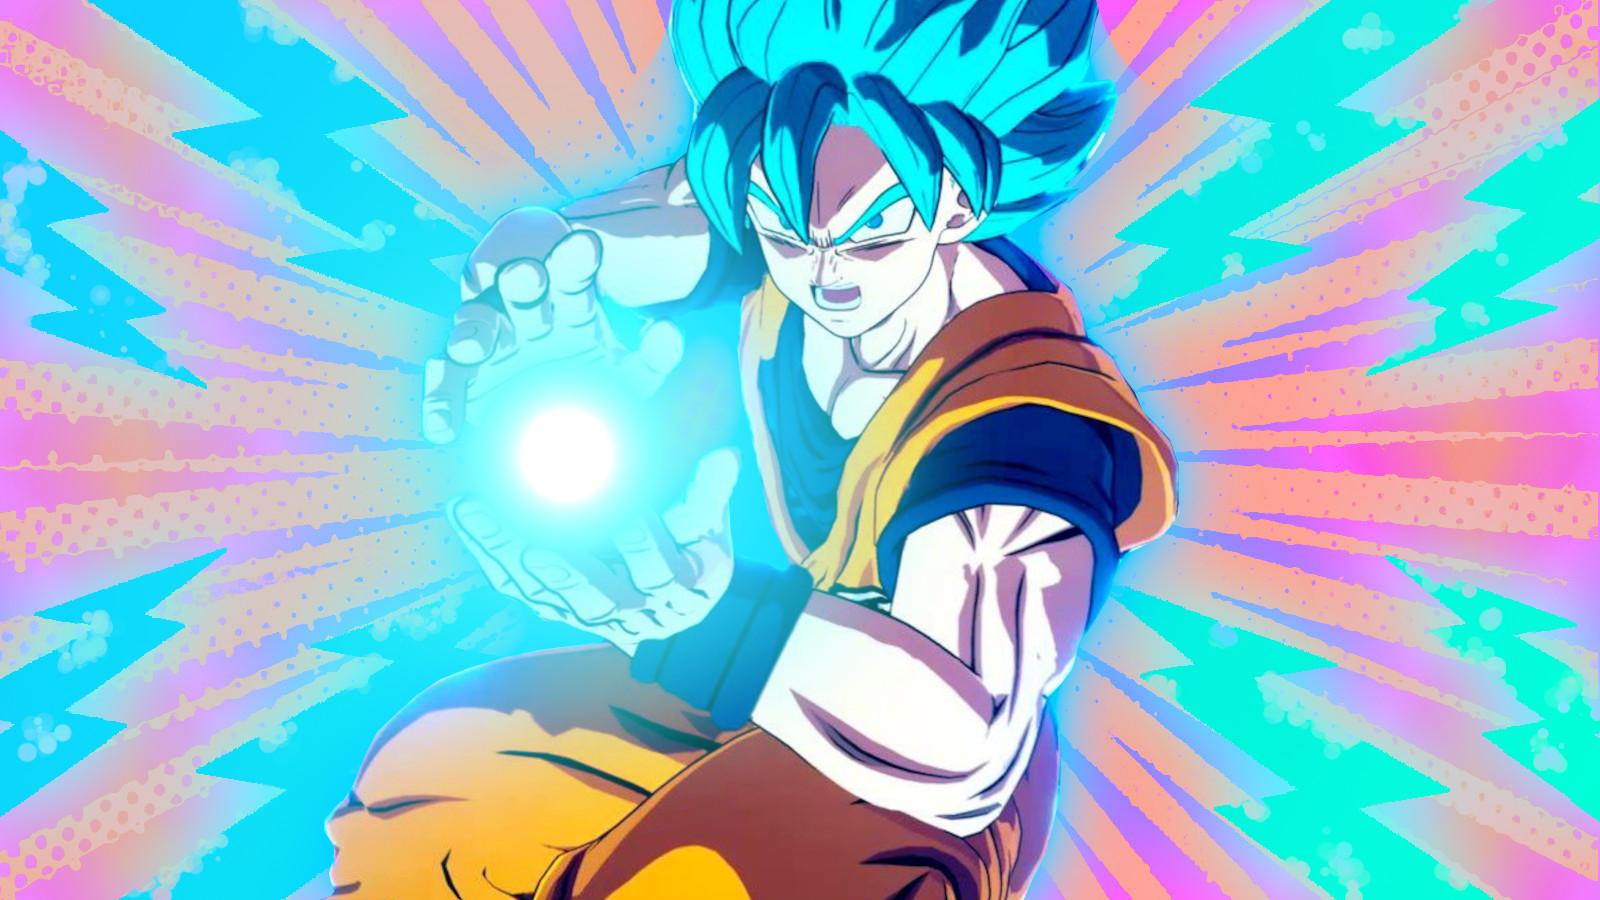 Super Saiyan Blue Goku charges up a Kamehamaha